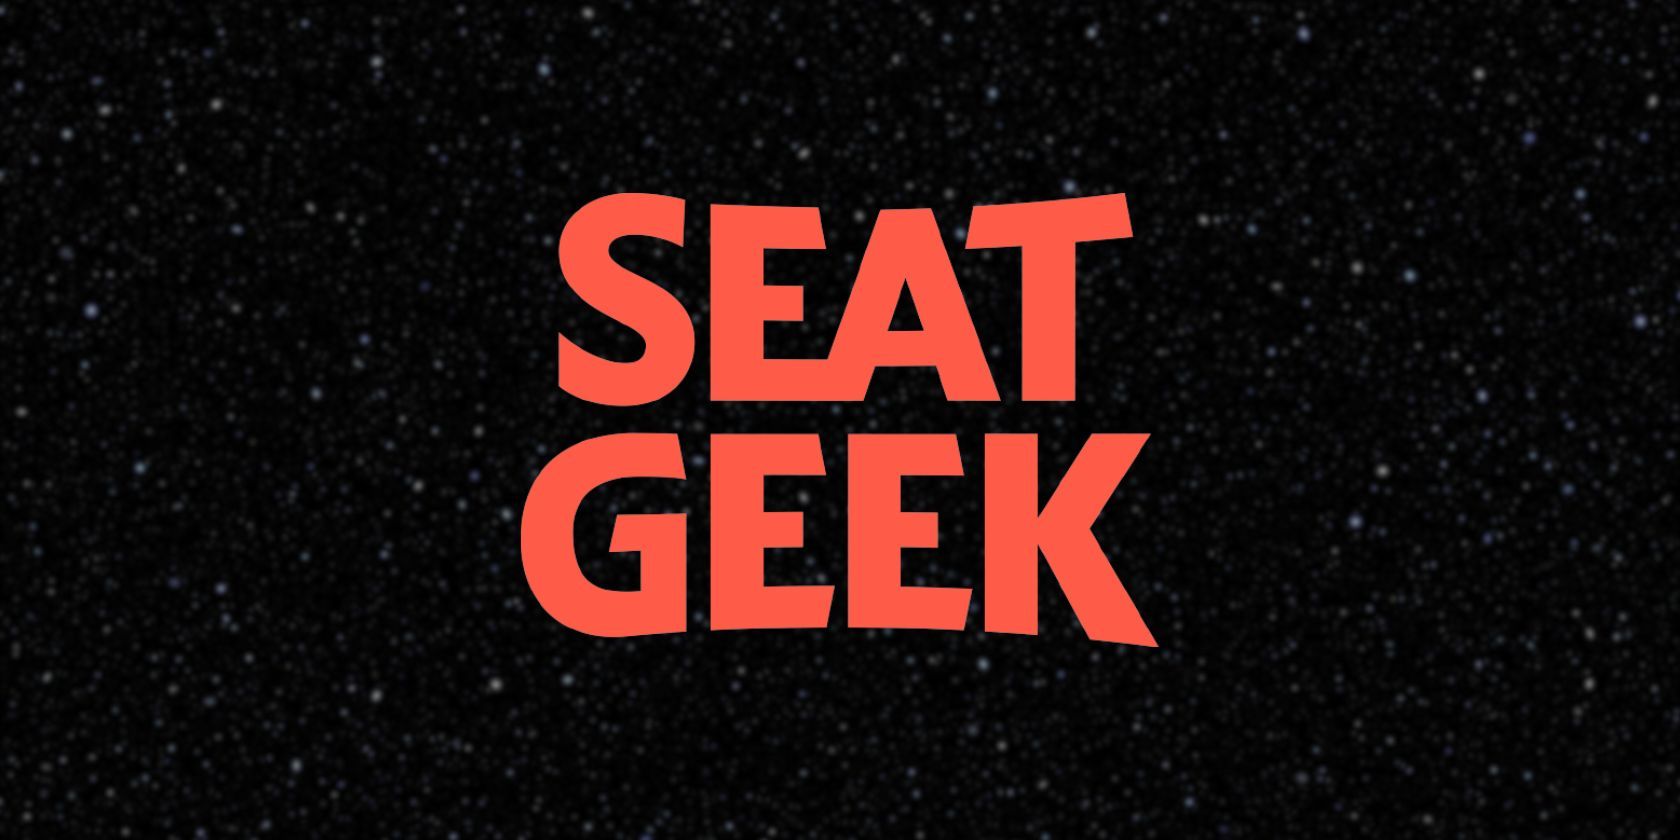 Seat Geek logo on black background